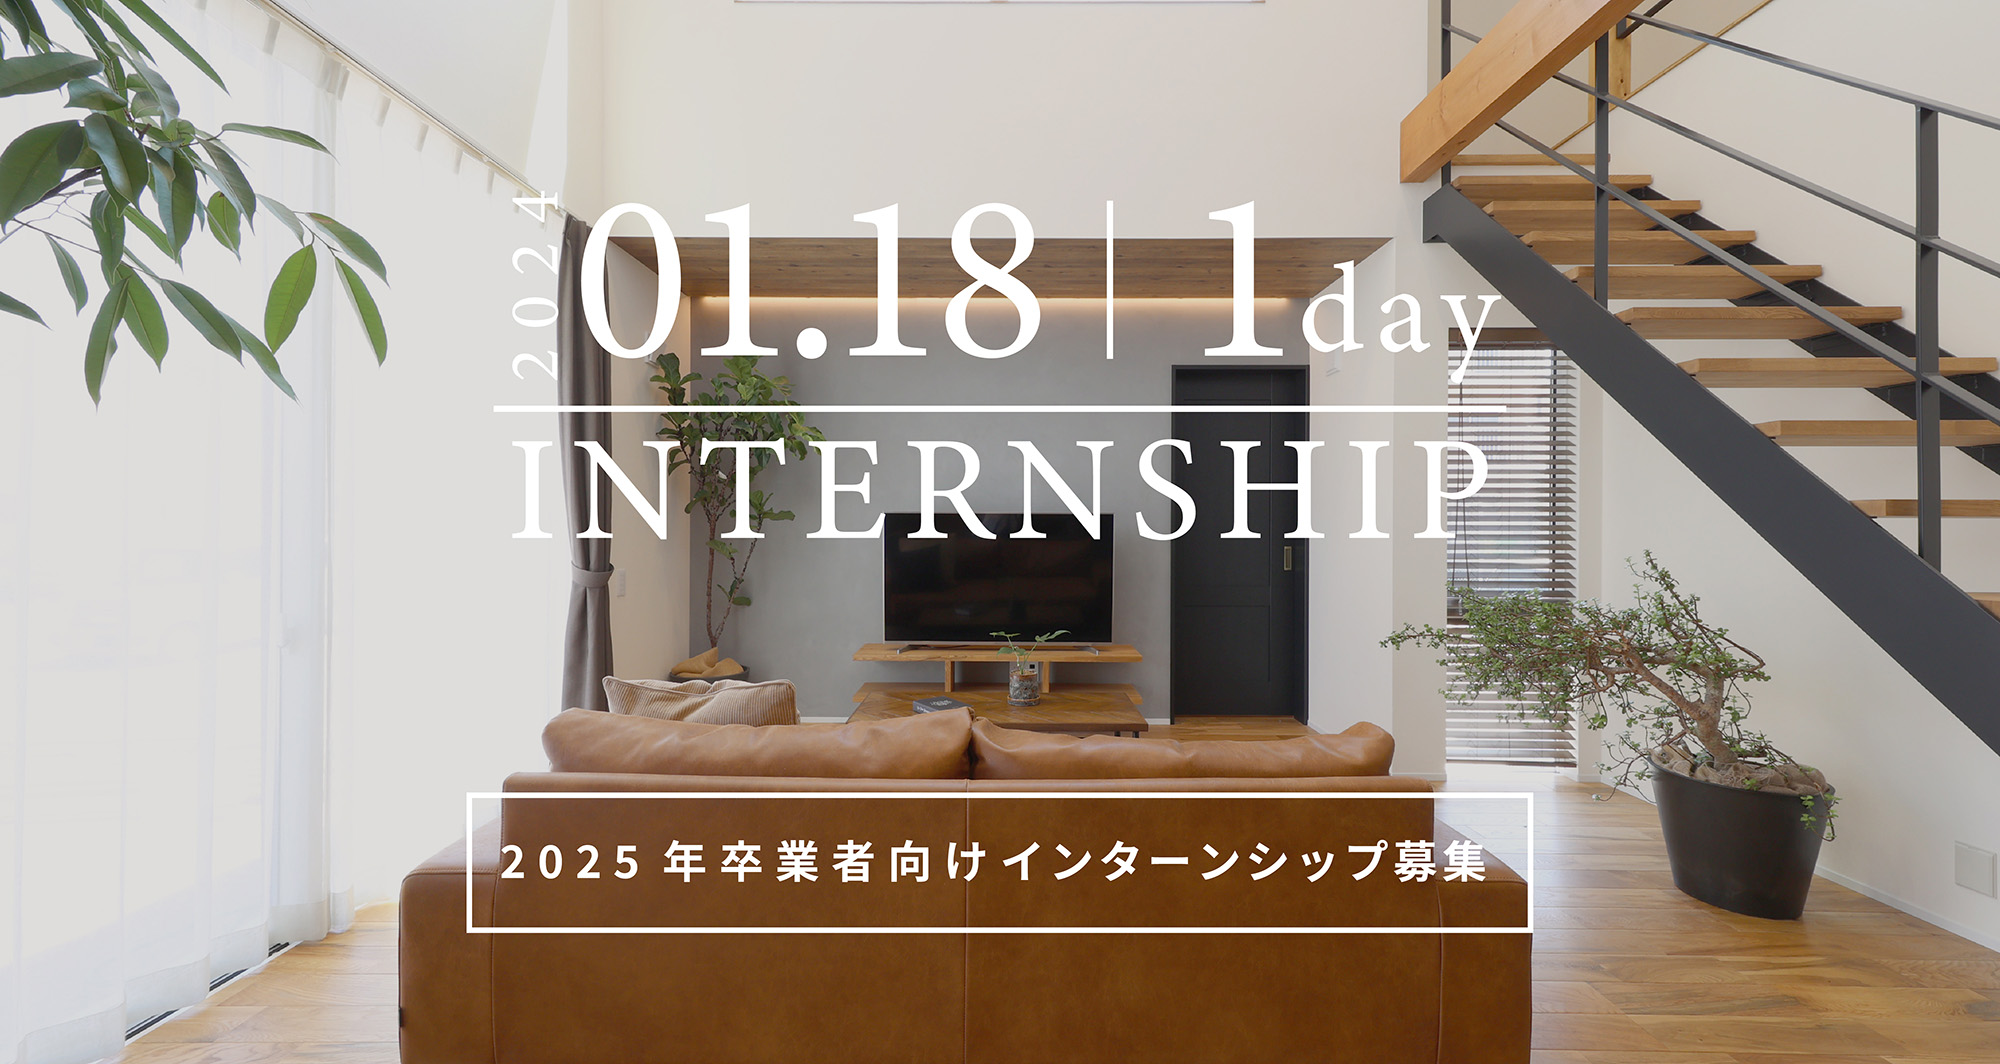 「静岡で働きたい学生方必見！」
会社説明会・インターンシップの開催！